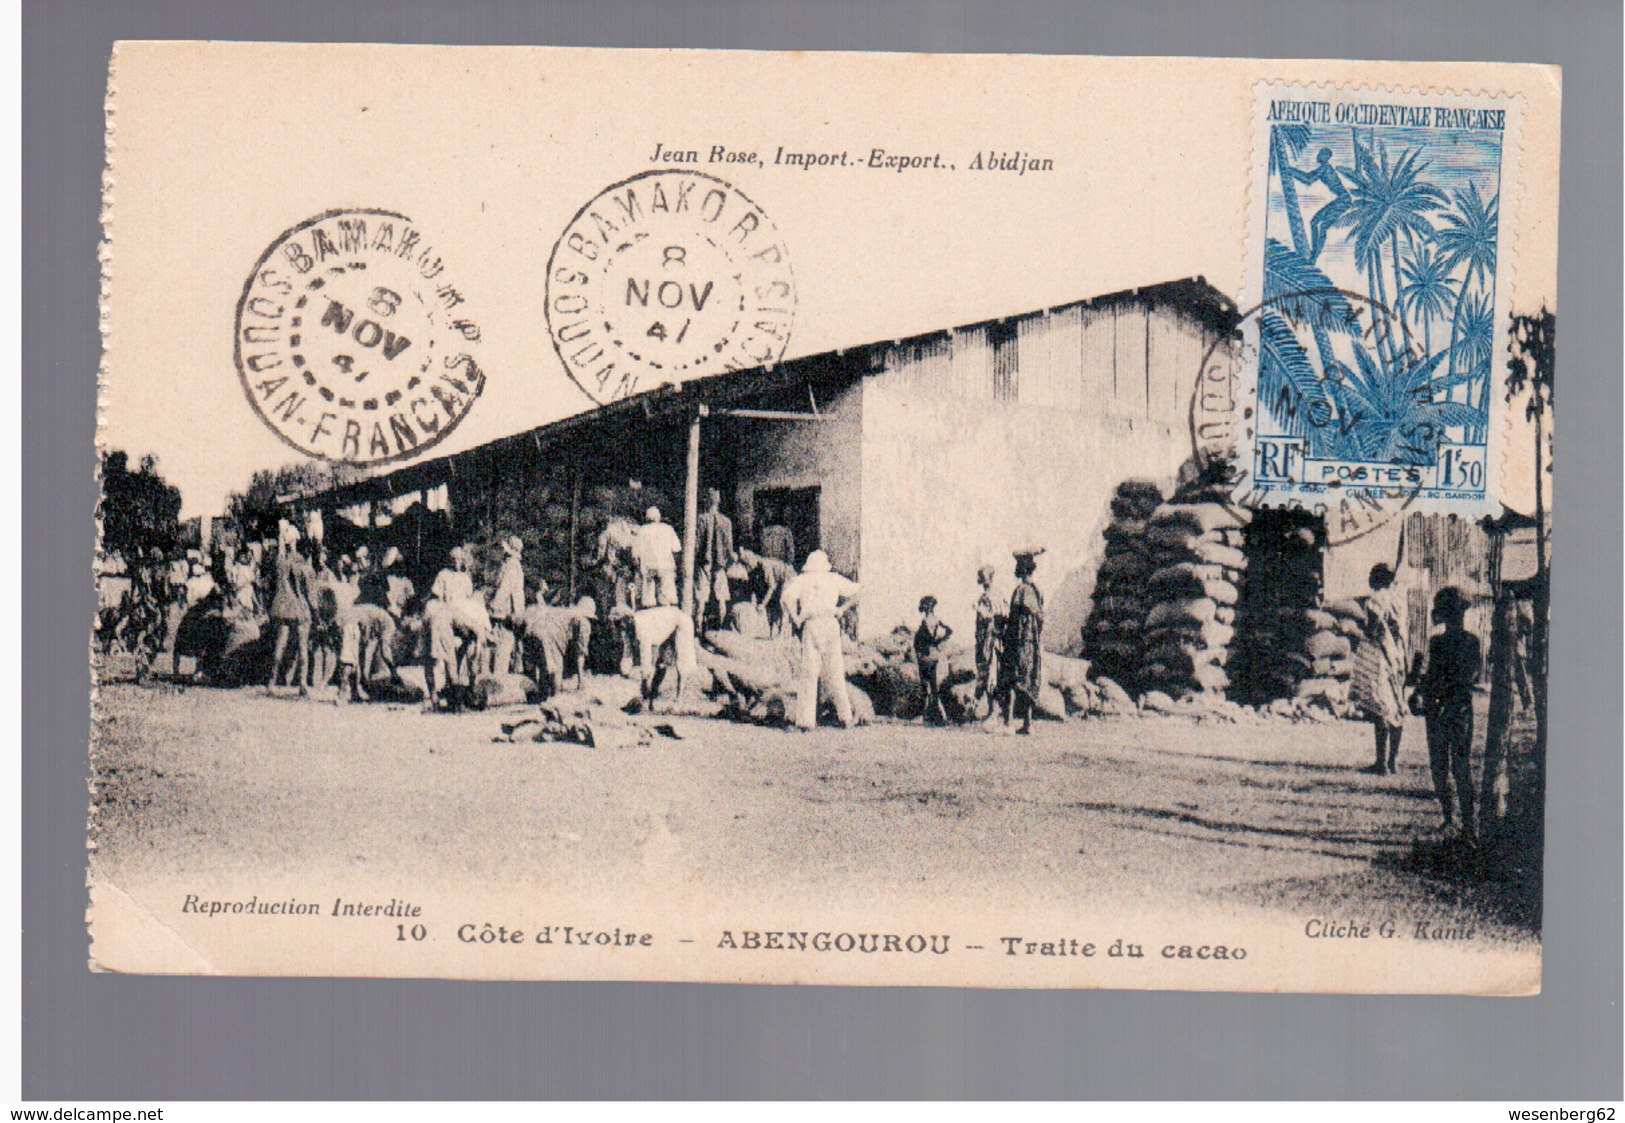 Cote D'Ivoire Abengourou - Traite Du Cacao Ca 1910 OLD POSTCARD - Côte-d'Ivoire